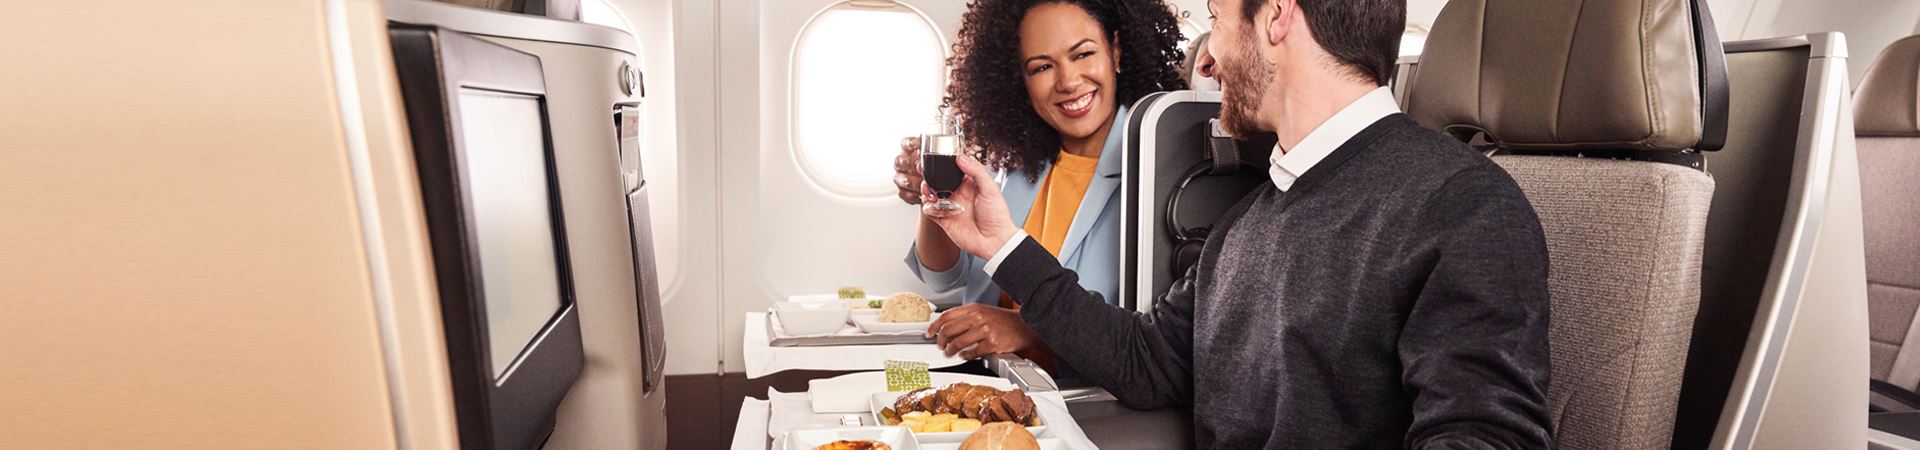 Un hombre y una mujer, sonrientes, sentados uno al lado del otro a bordo de un avión TAP. Ambos sostienen un vaso en la mano y brindan. Frente a ellos, cada uno tiene una bandeja con una comida de carne, pan y un pastel de nata.